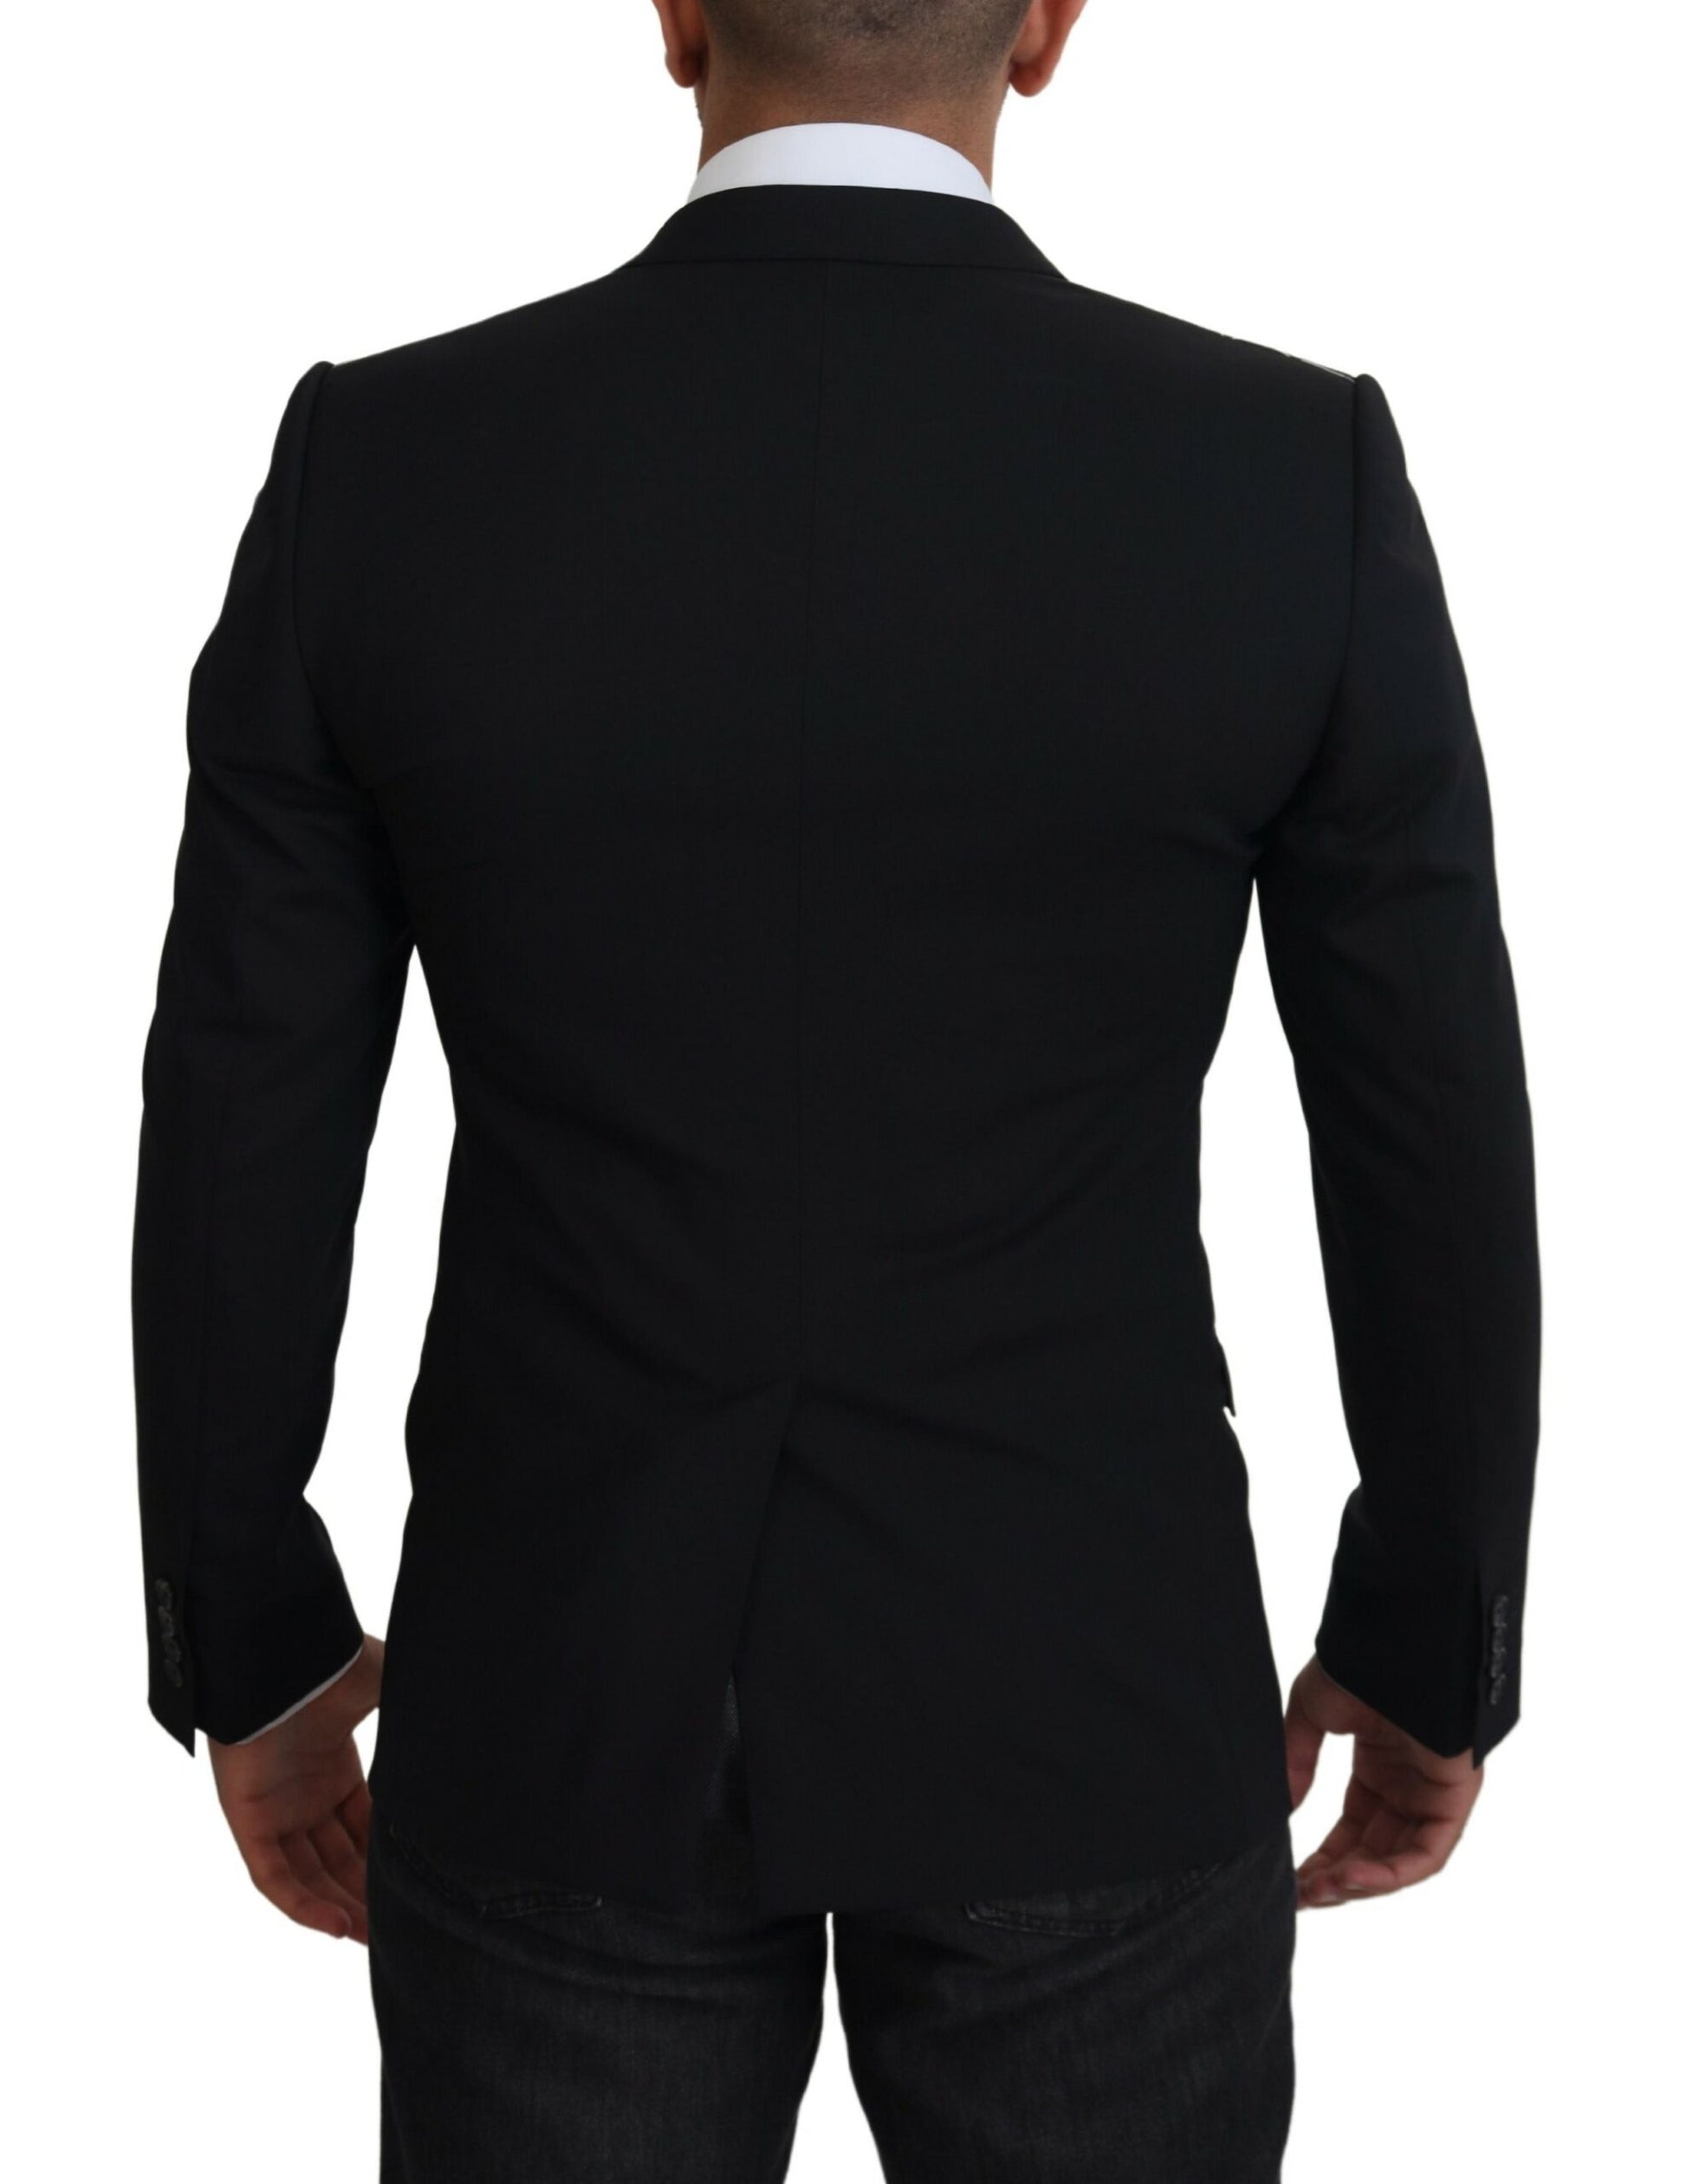 Elegant Black Martini Two-Piece Suit